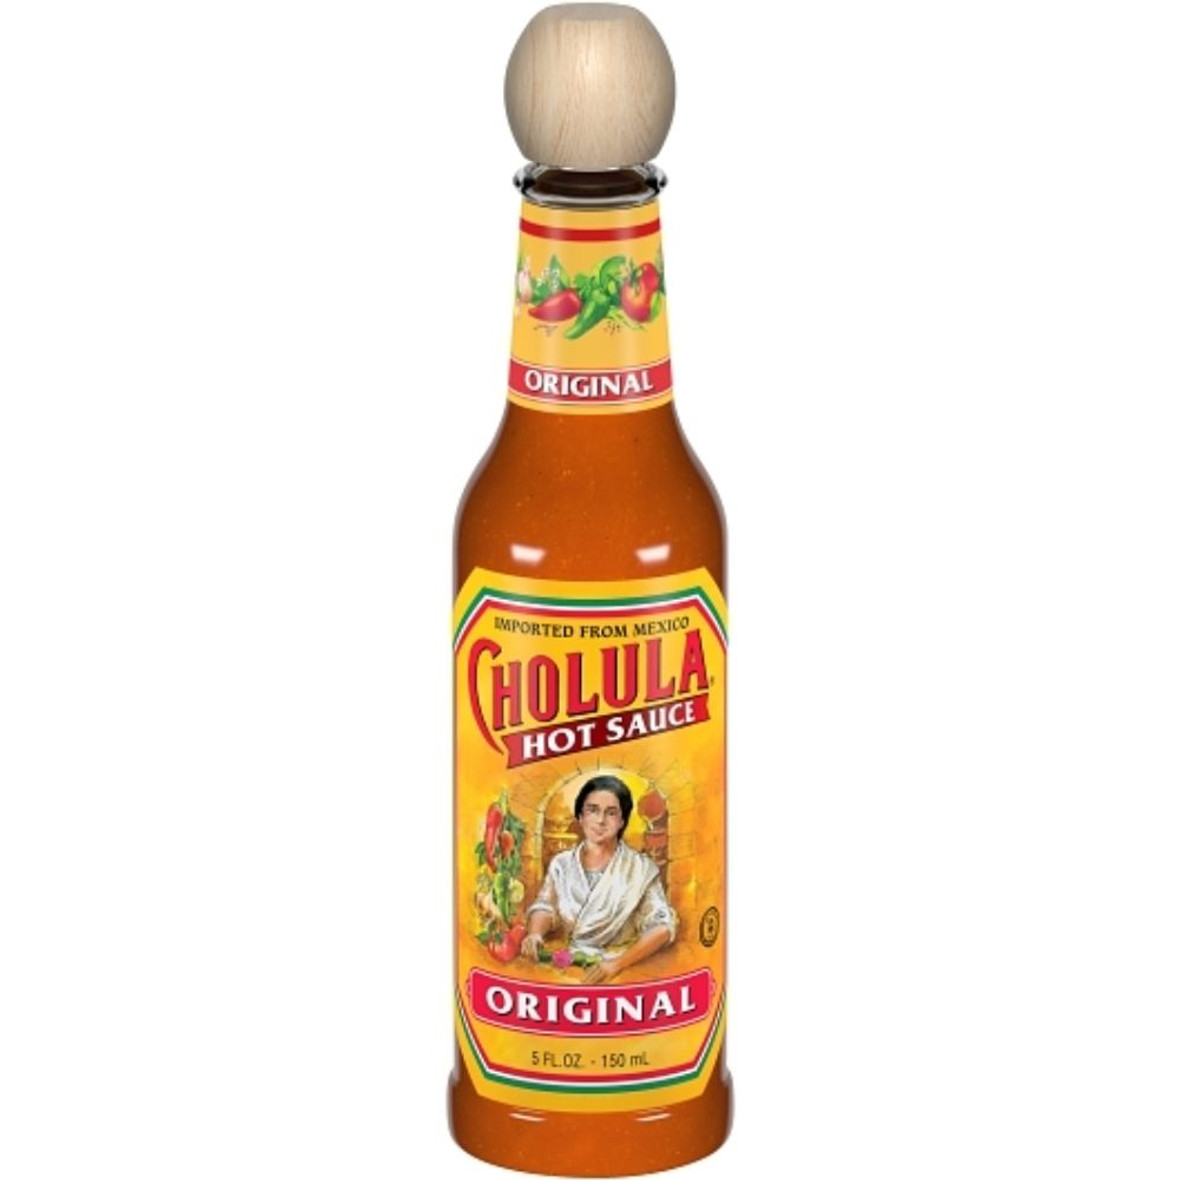 Cholula Original Hot Sauce bulk wholesale